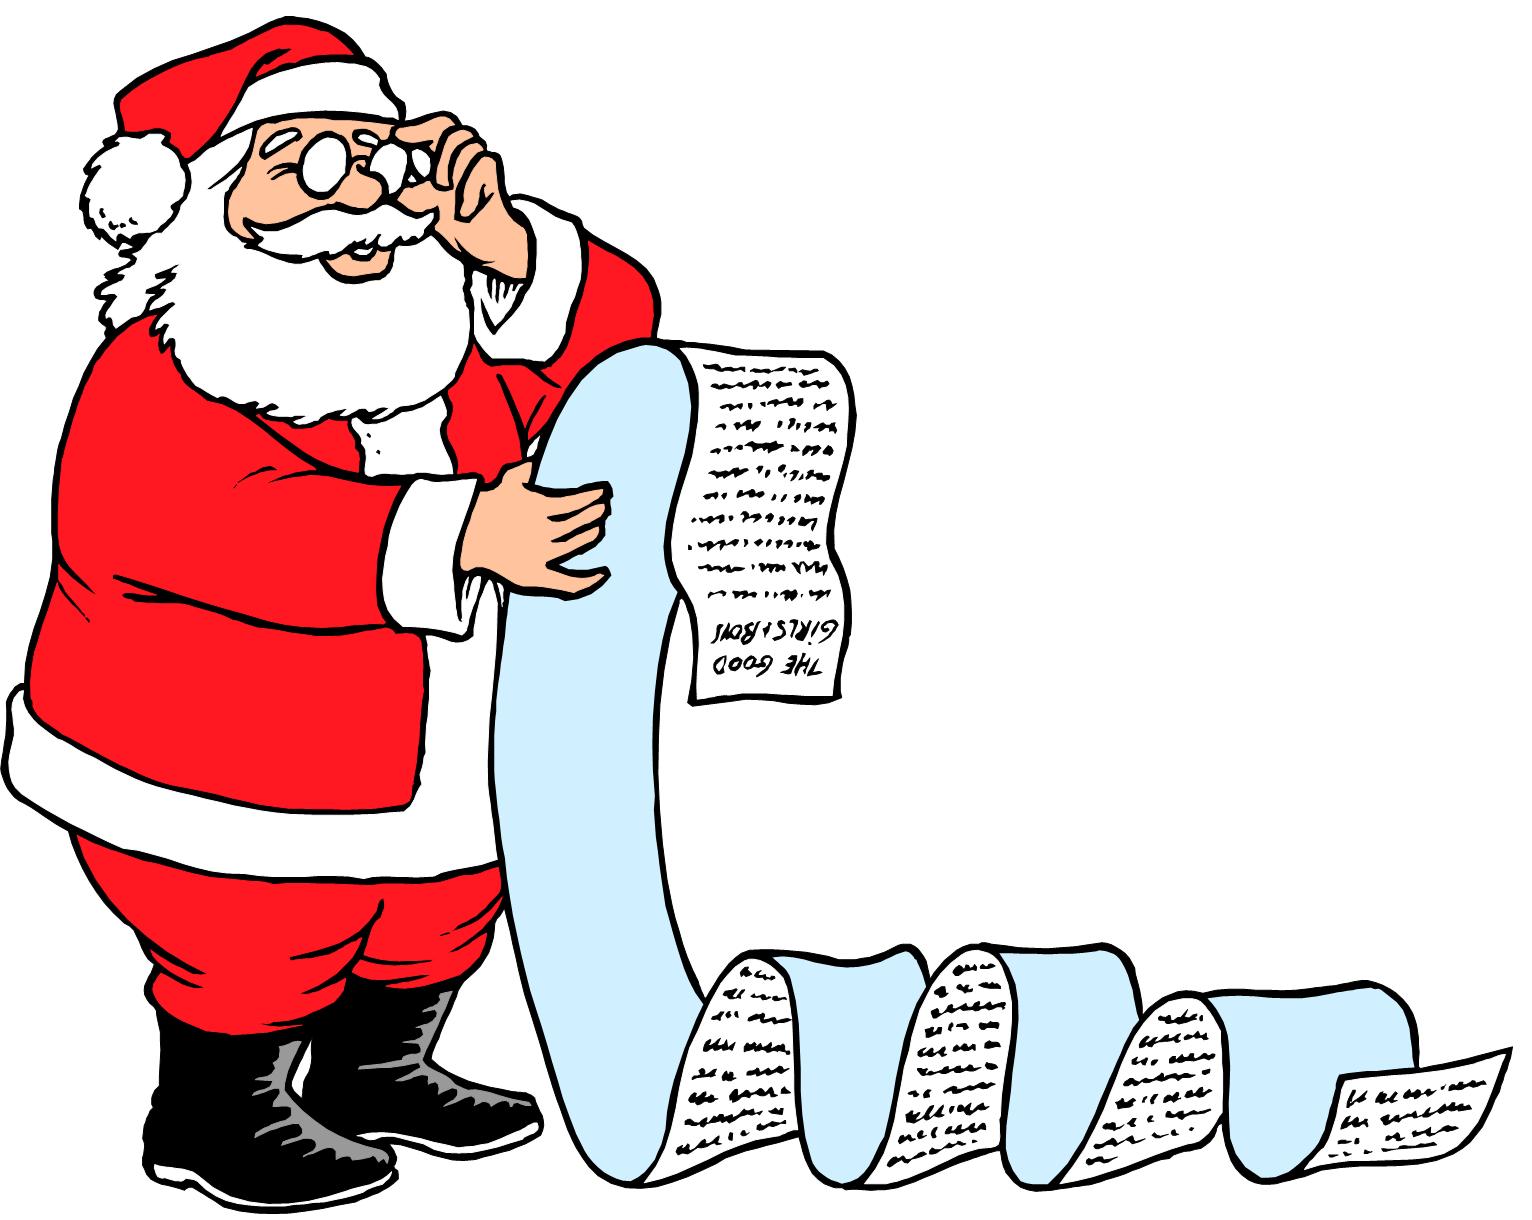 صور كروت معايدة مرسوم عليها بابا نويل 2014 , صور بابا نويل للتهاني جديدة وحصرية 2014